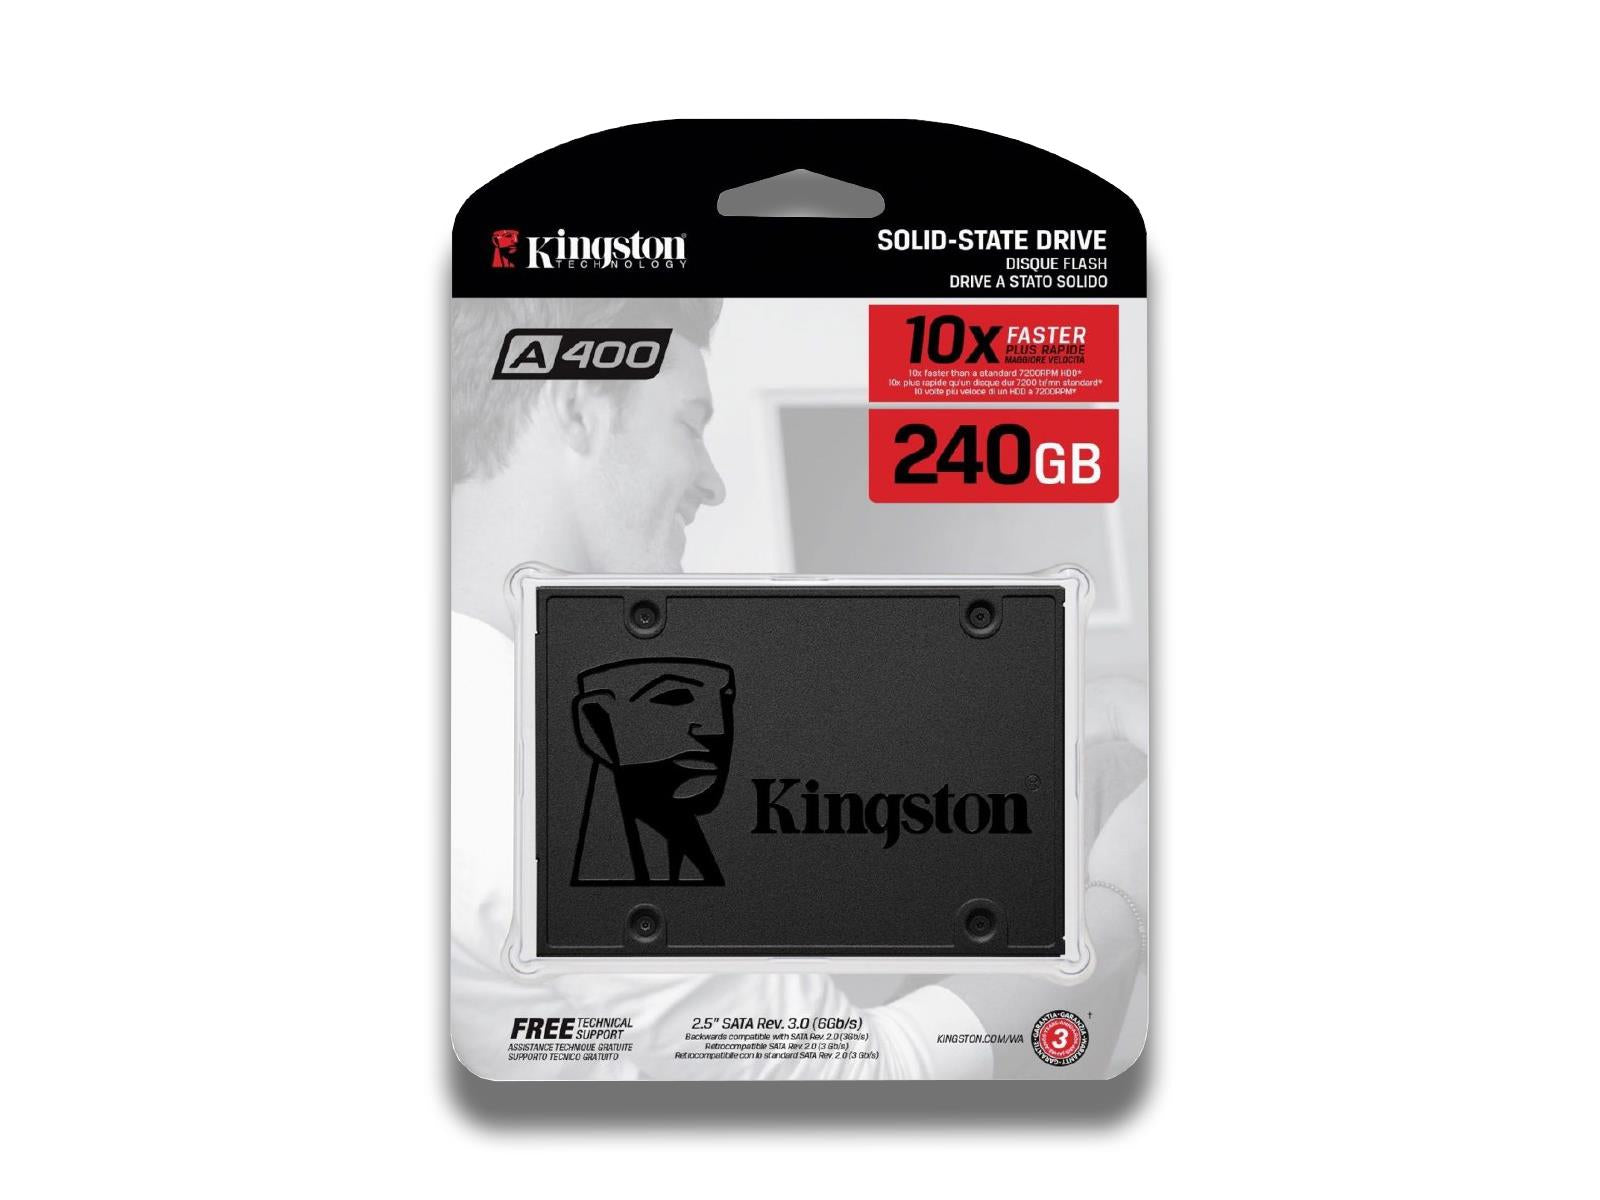 Kingston-A400 SSD In 240GB